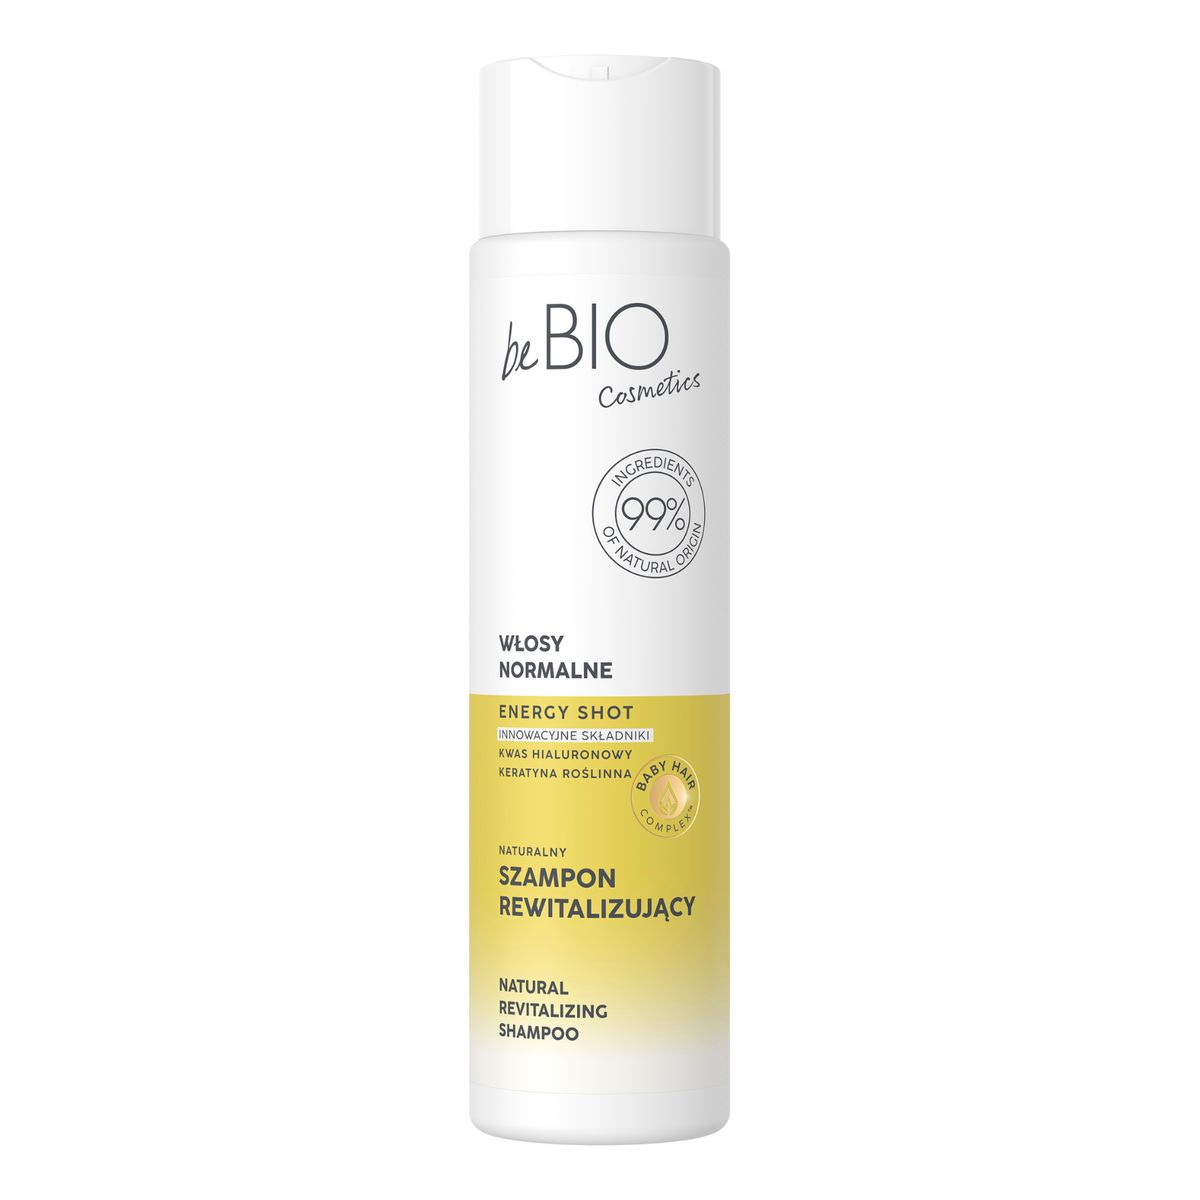 Be Bio Ewa Chodakowska Naturalny szampon do włosów normalnych rewitalizujący 300ml